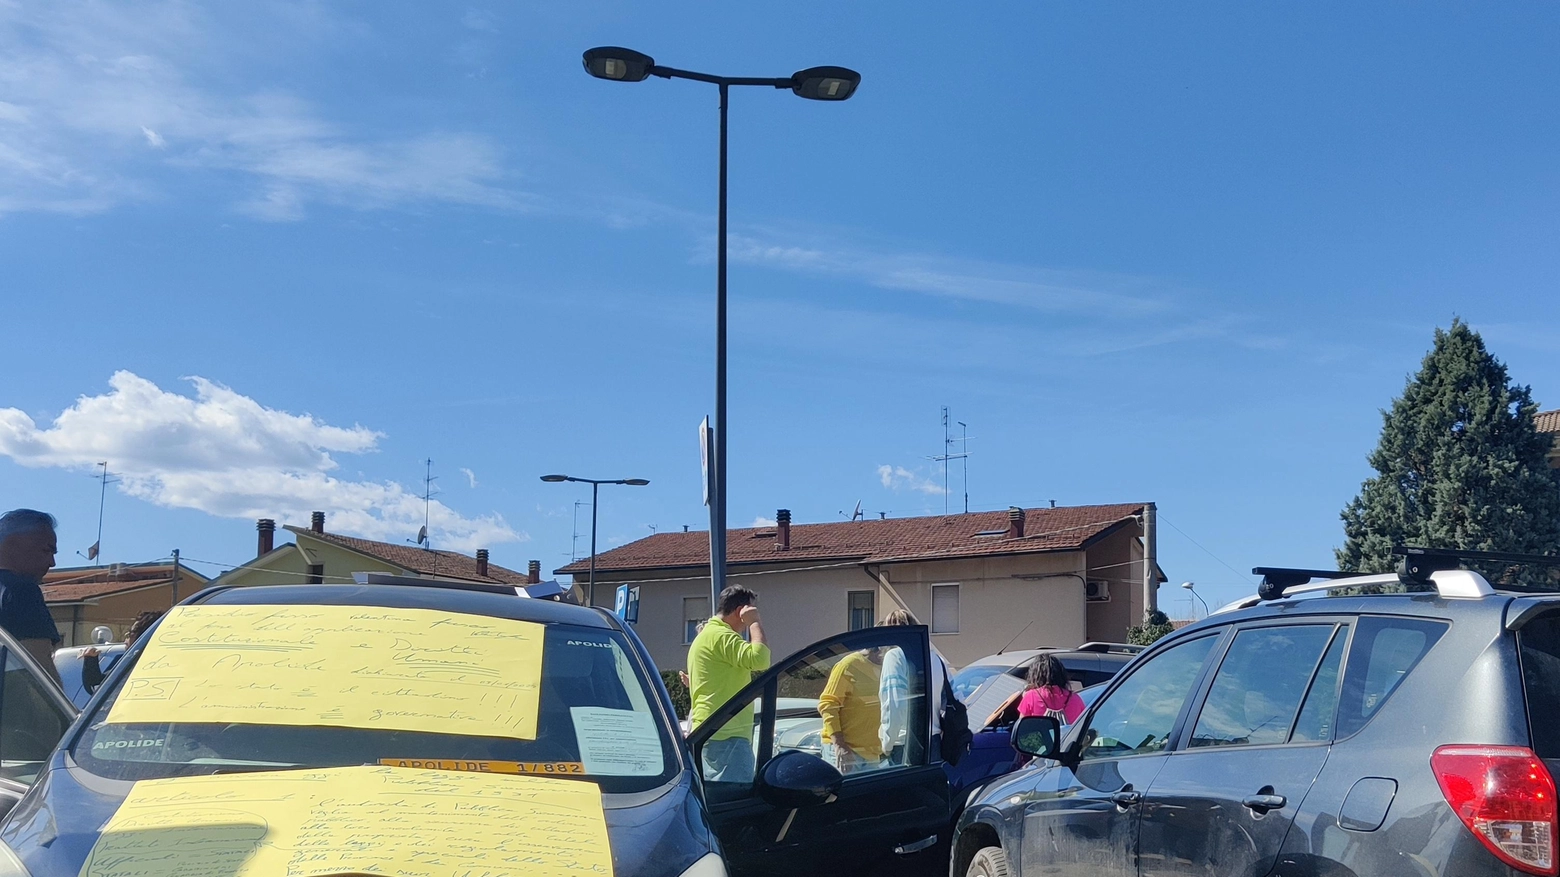 Parcheggio occupato per protesta  Esercenti esasperati: "Intervenite"